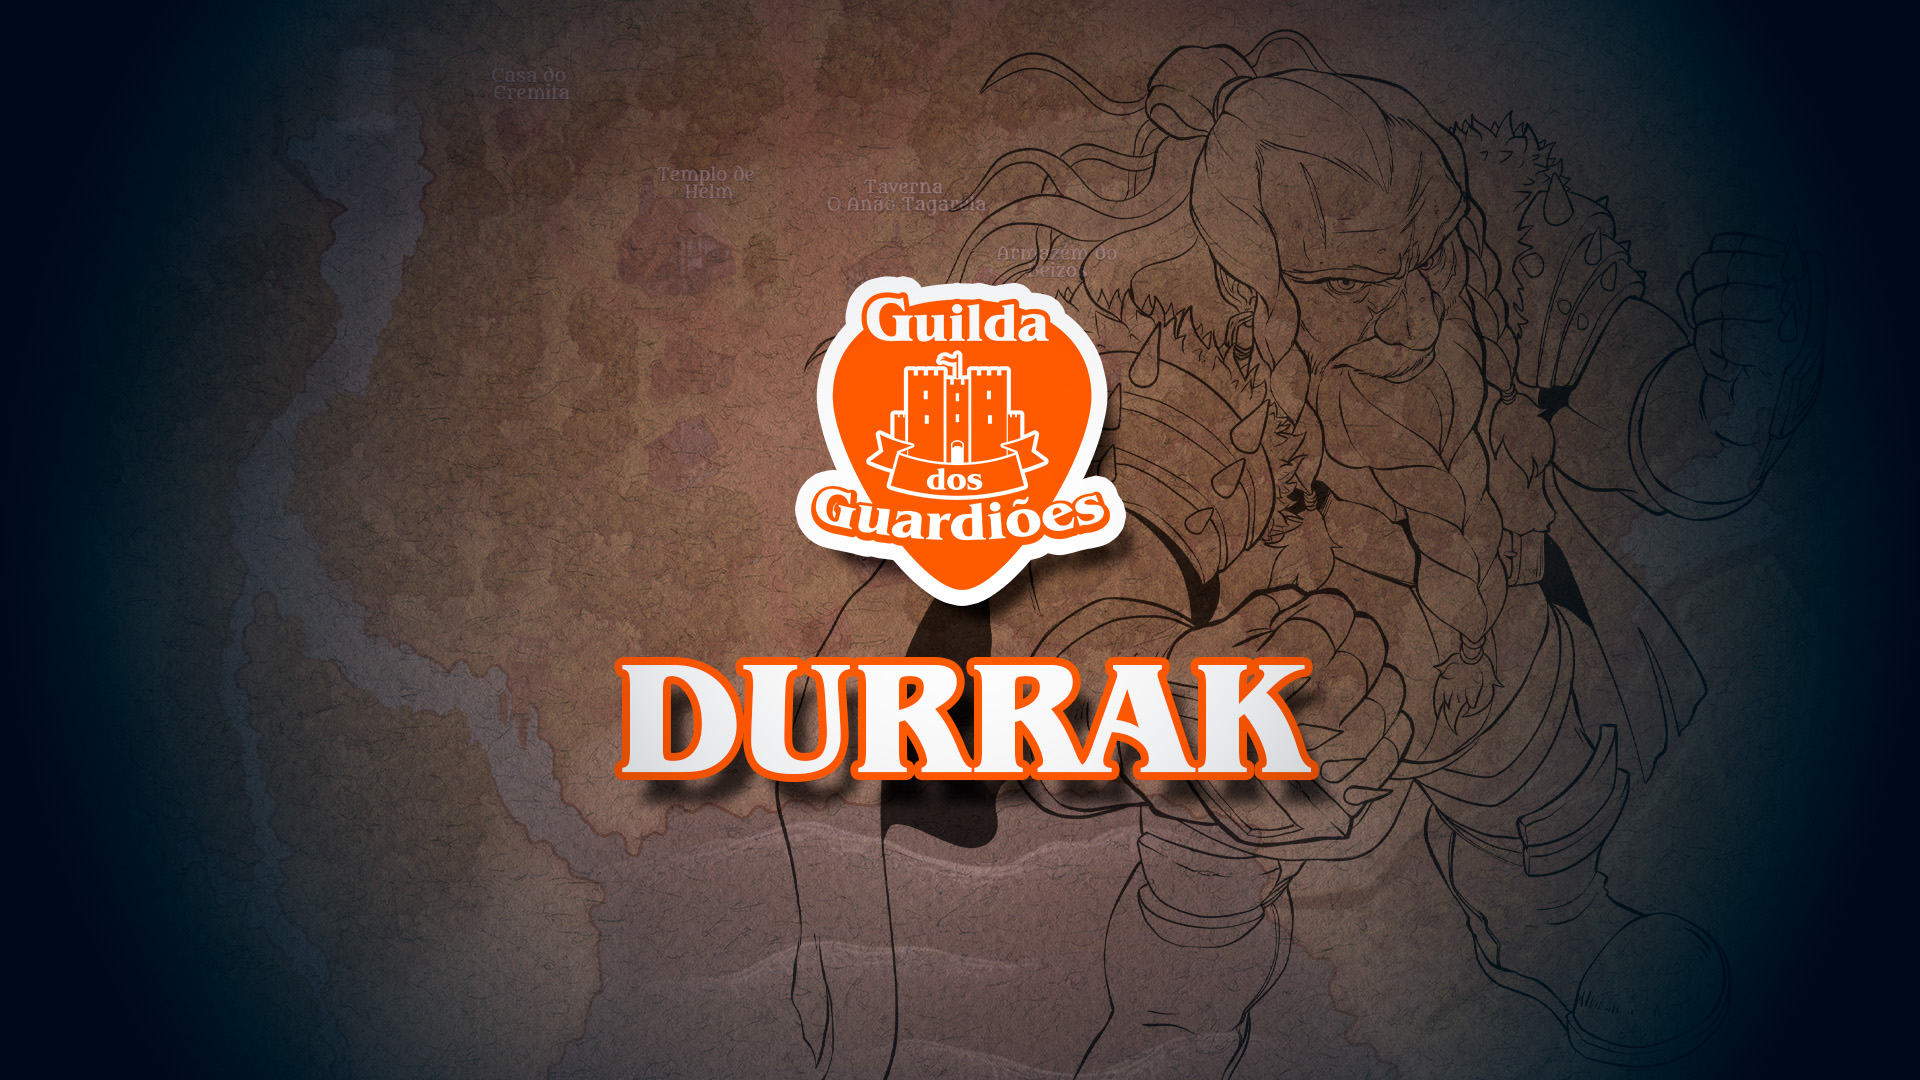 Durrak - Guilda dos Guardiões - NPCS - D&D 5ª Edição